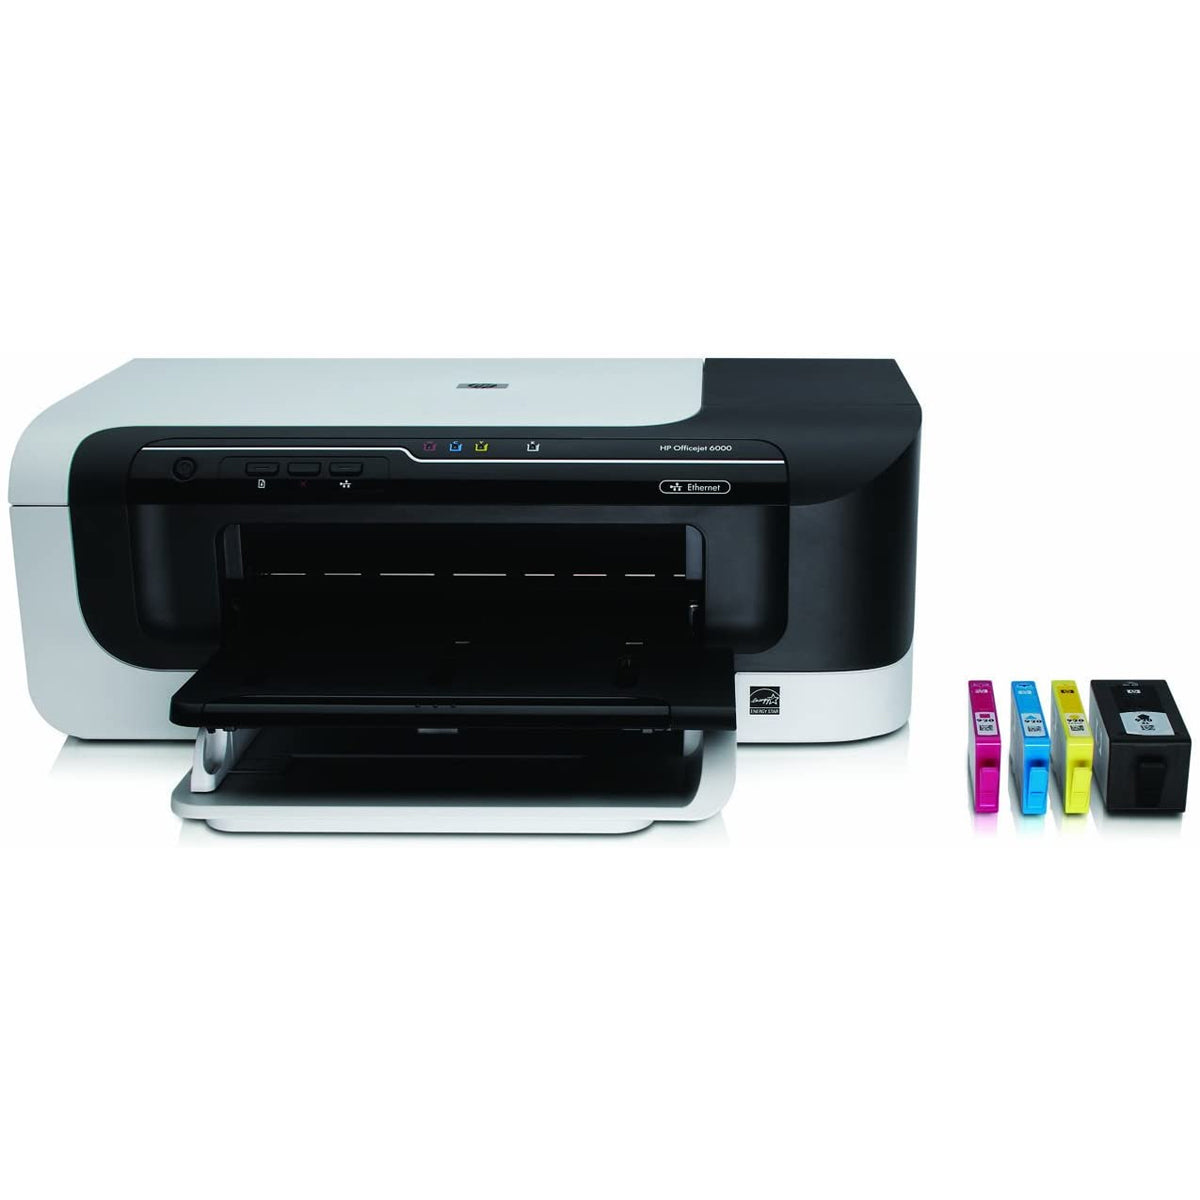 Used Printer Hp 6000 E609 Officejet Jumbo International 8609